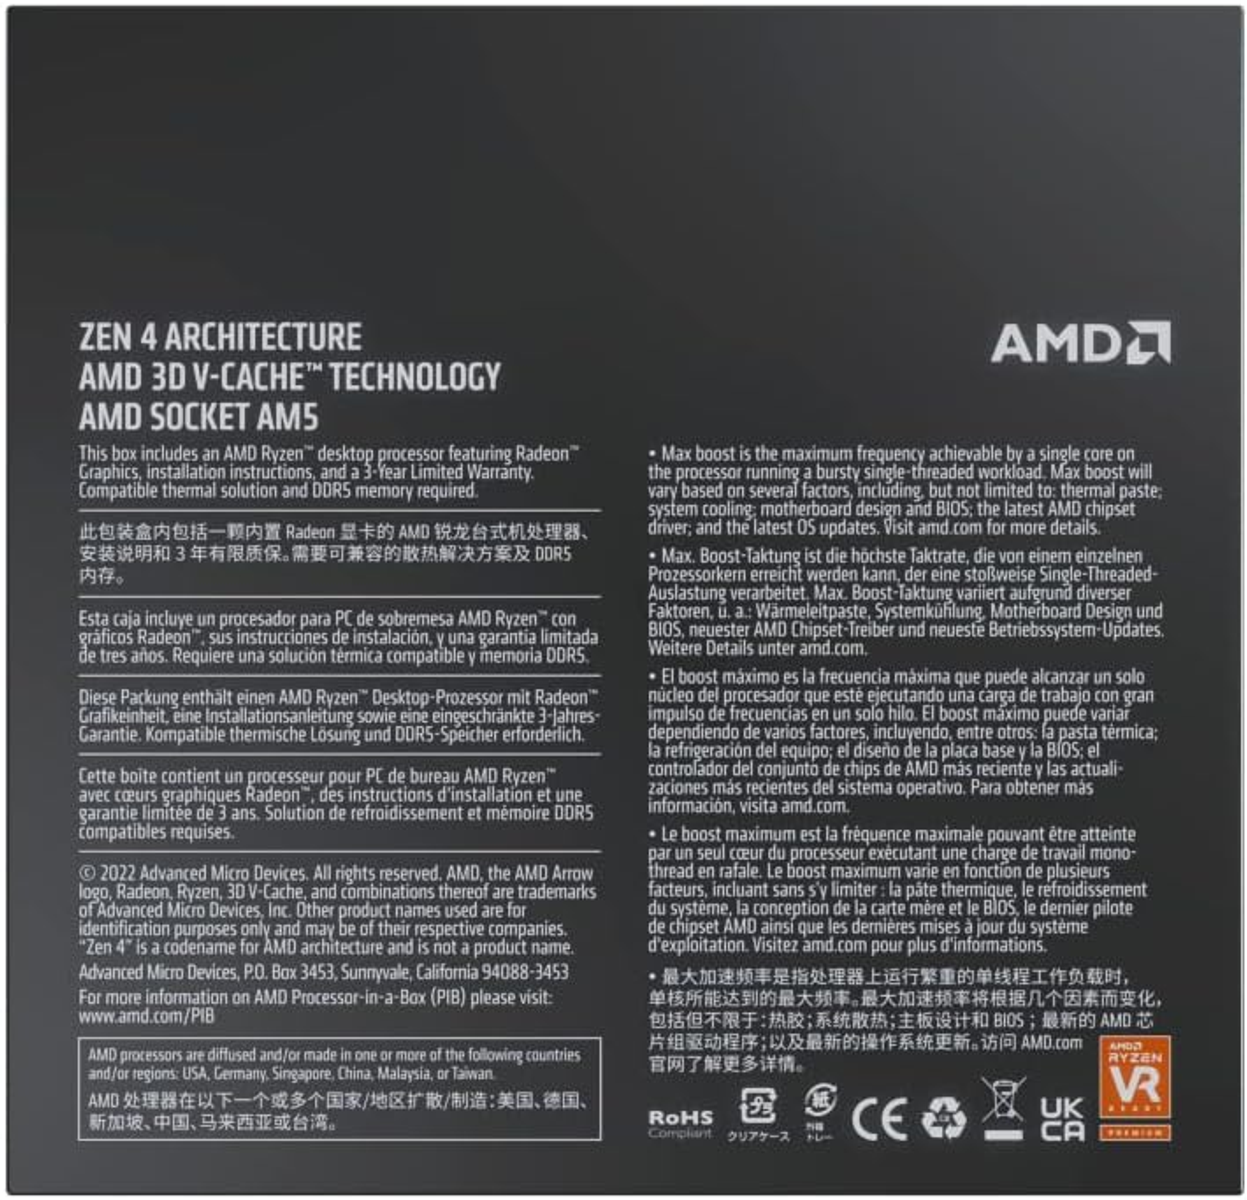 Ryzen Prozessor, Schwarz AMD 9 7900X3D